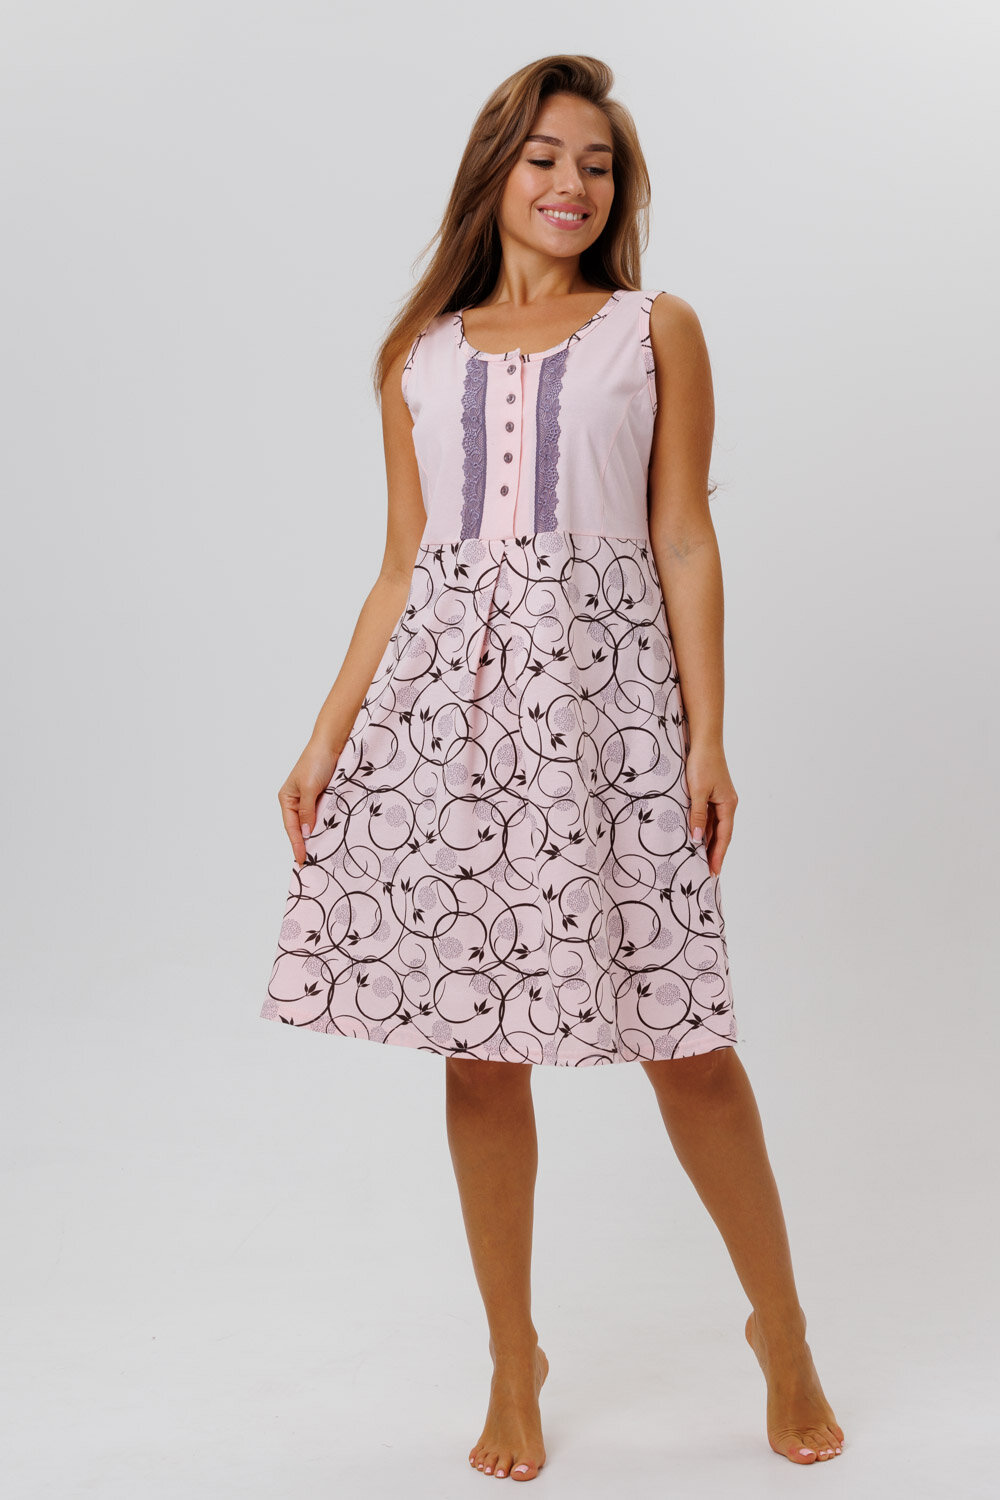 Сорочка Modellini средней длины, без рукава, размер 54, розовый - фотография № 1